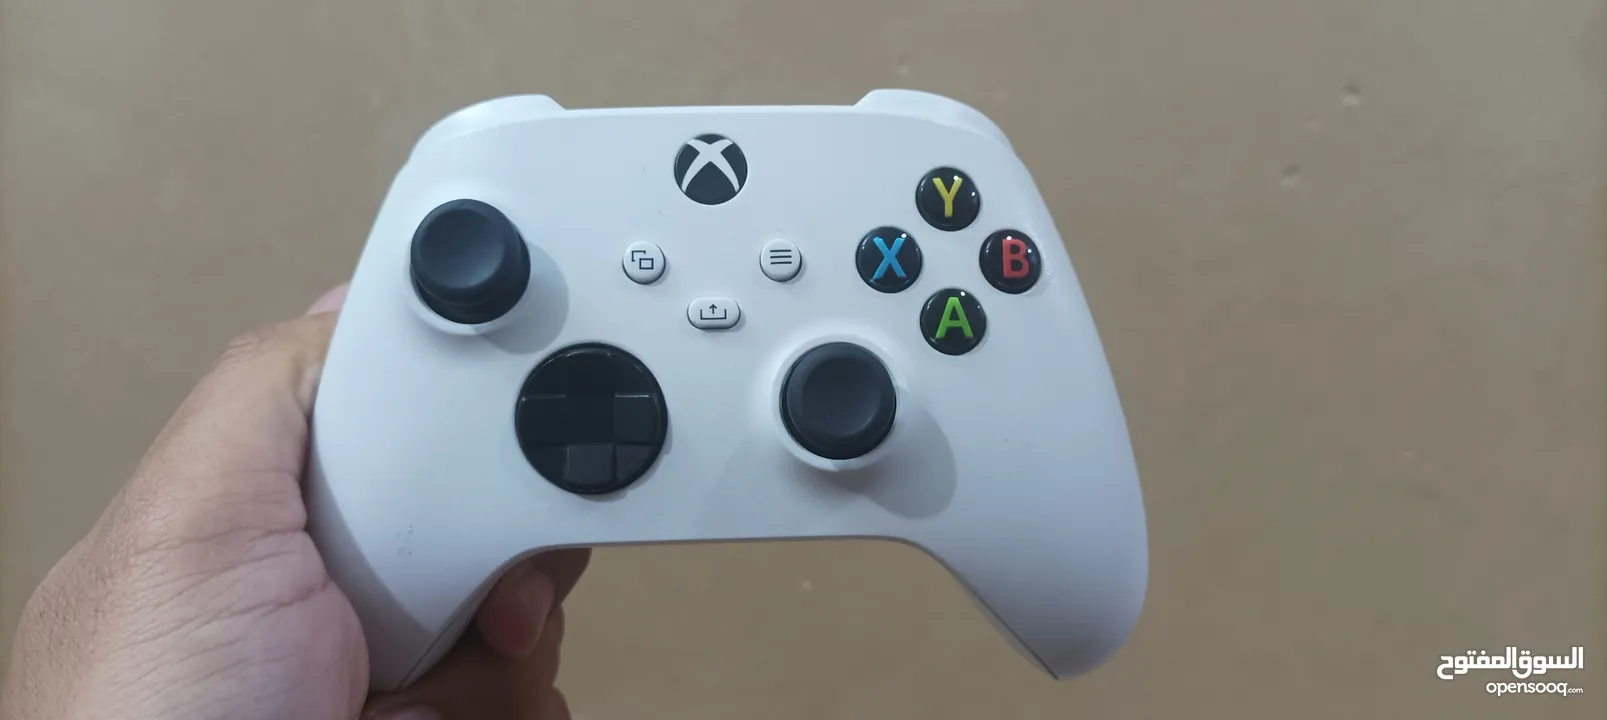 جوستك Xbox series X/S مستعمل للبيع